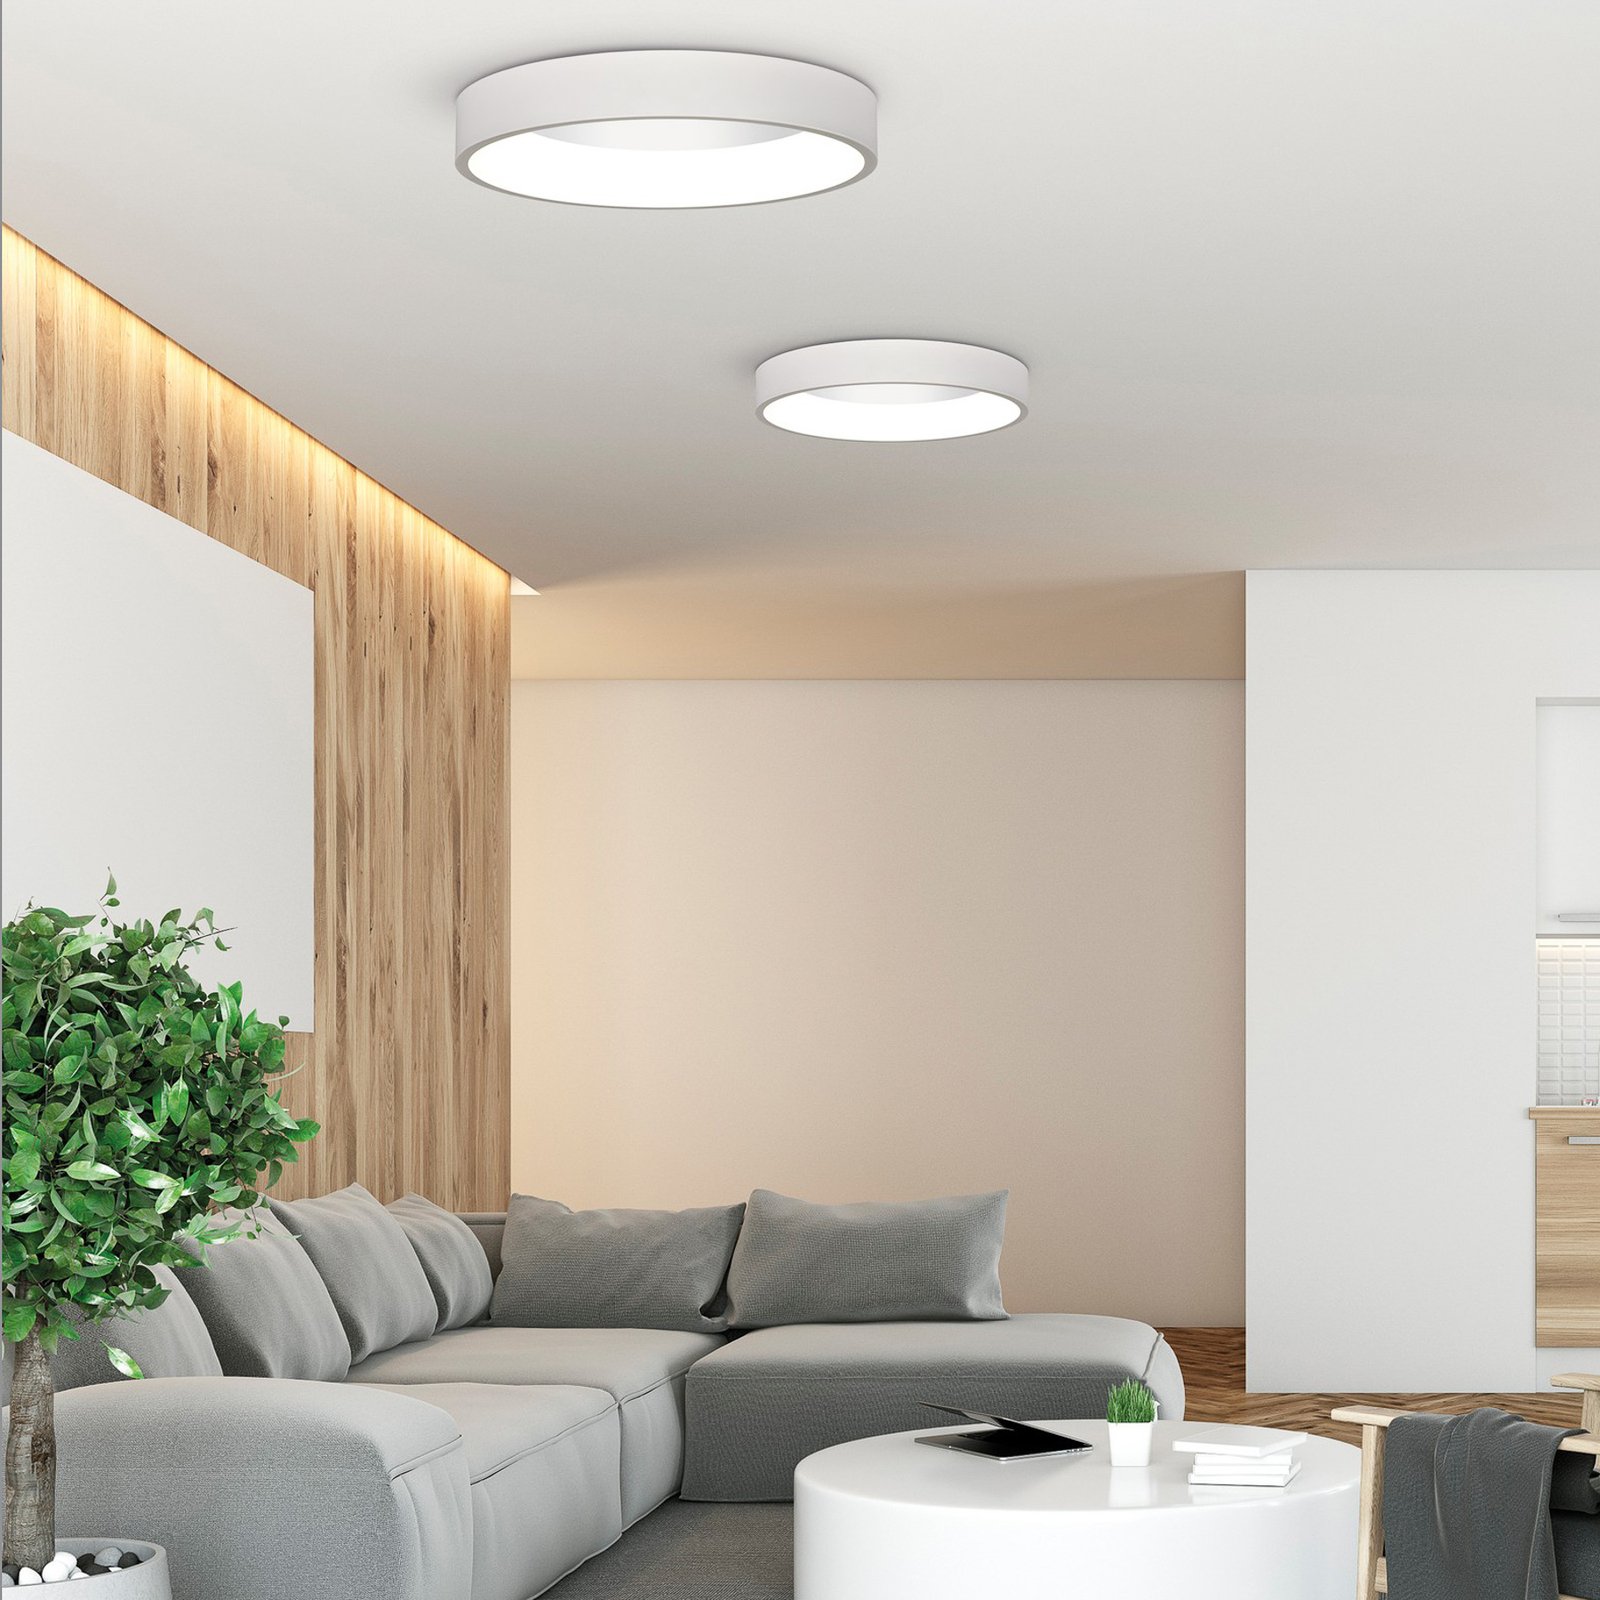 Dilga LED ceiling light, Ø 60 cm, Casambi, 48 W, white